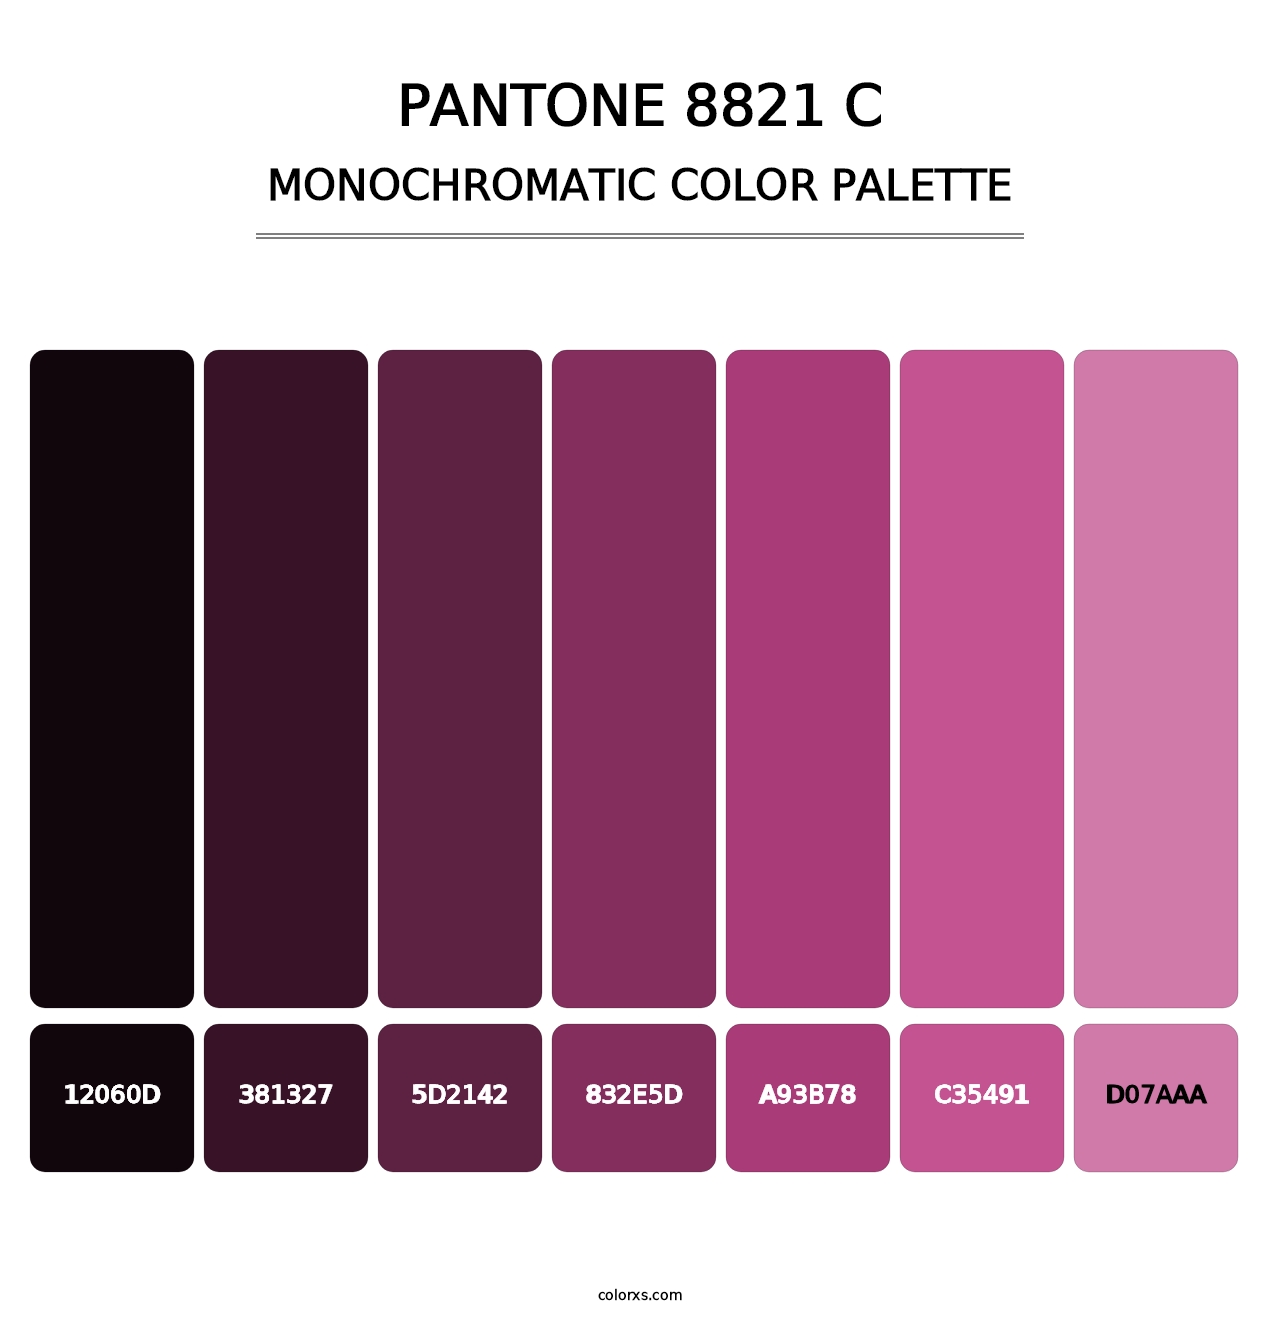 PANTONE 8821 C - Monochromatic Color Palette